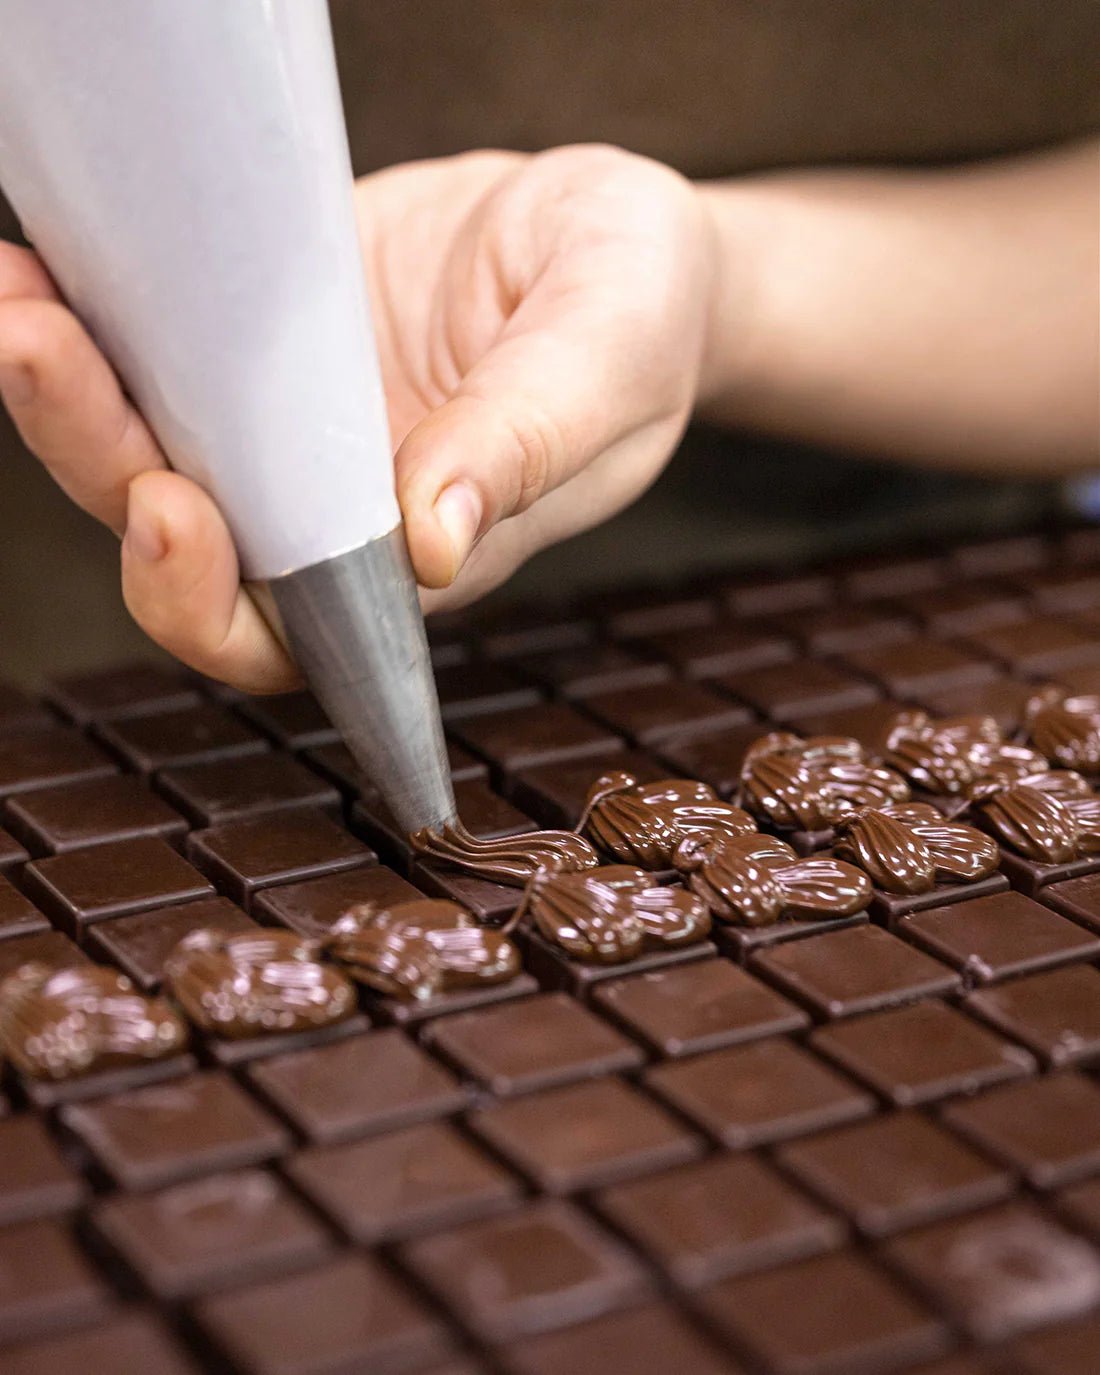 Beneficios del Chocolate: Una Delicia Saludable - Bombonería Pons